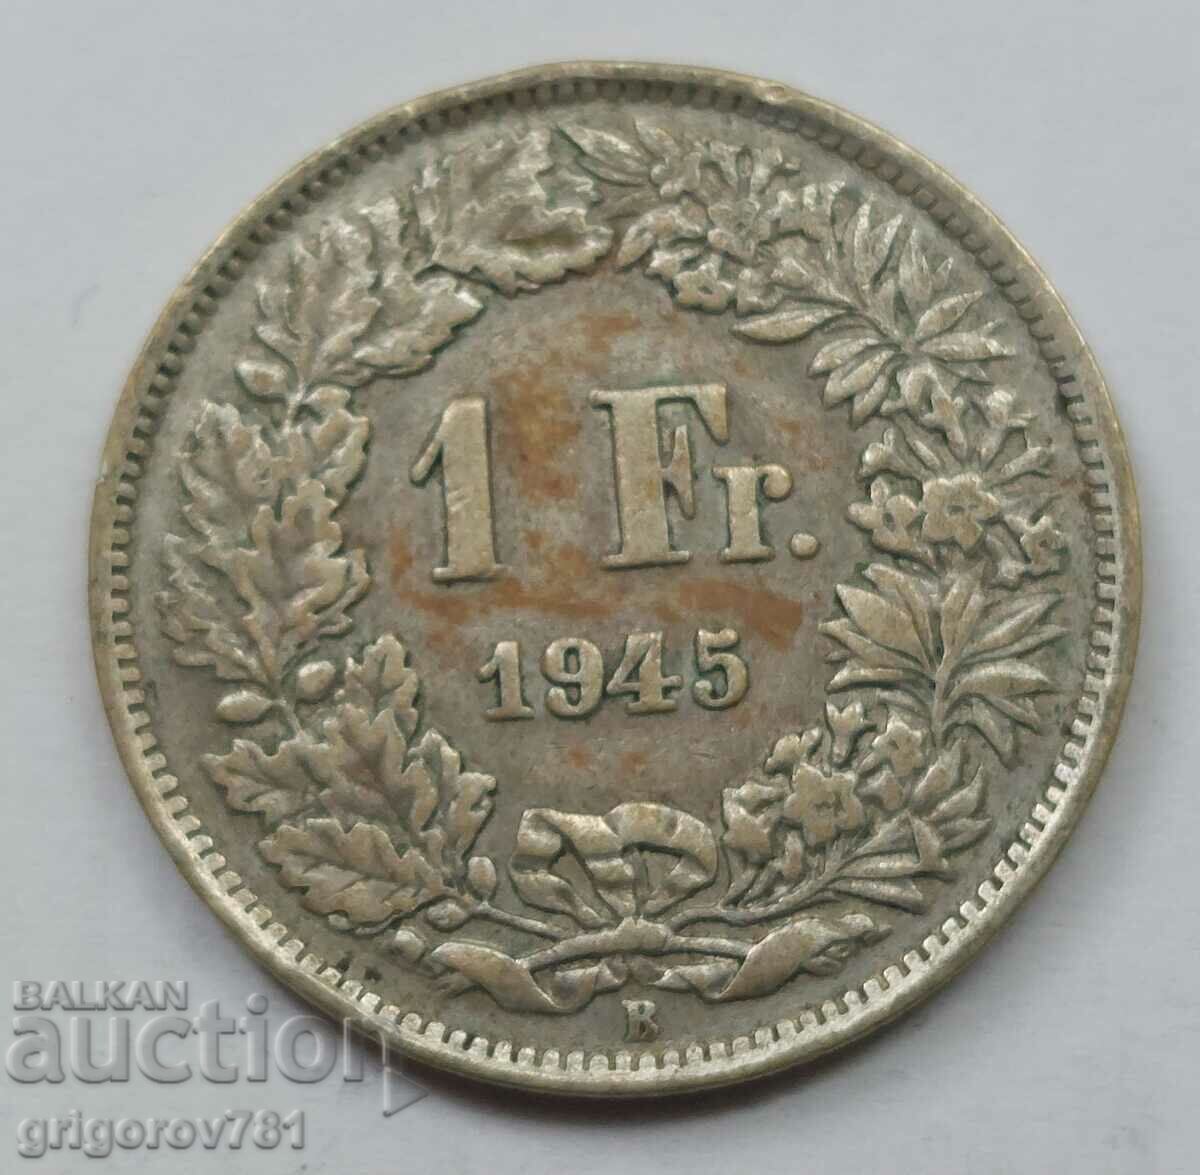 Ασημένιο 1 φράγκο Ελβετία 1945 B - Ασημένιο νόμισμα #31